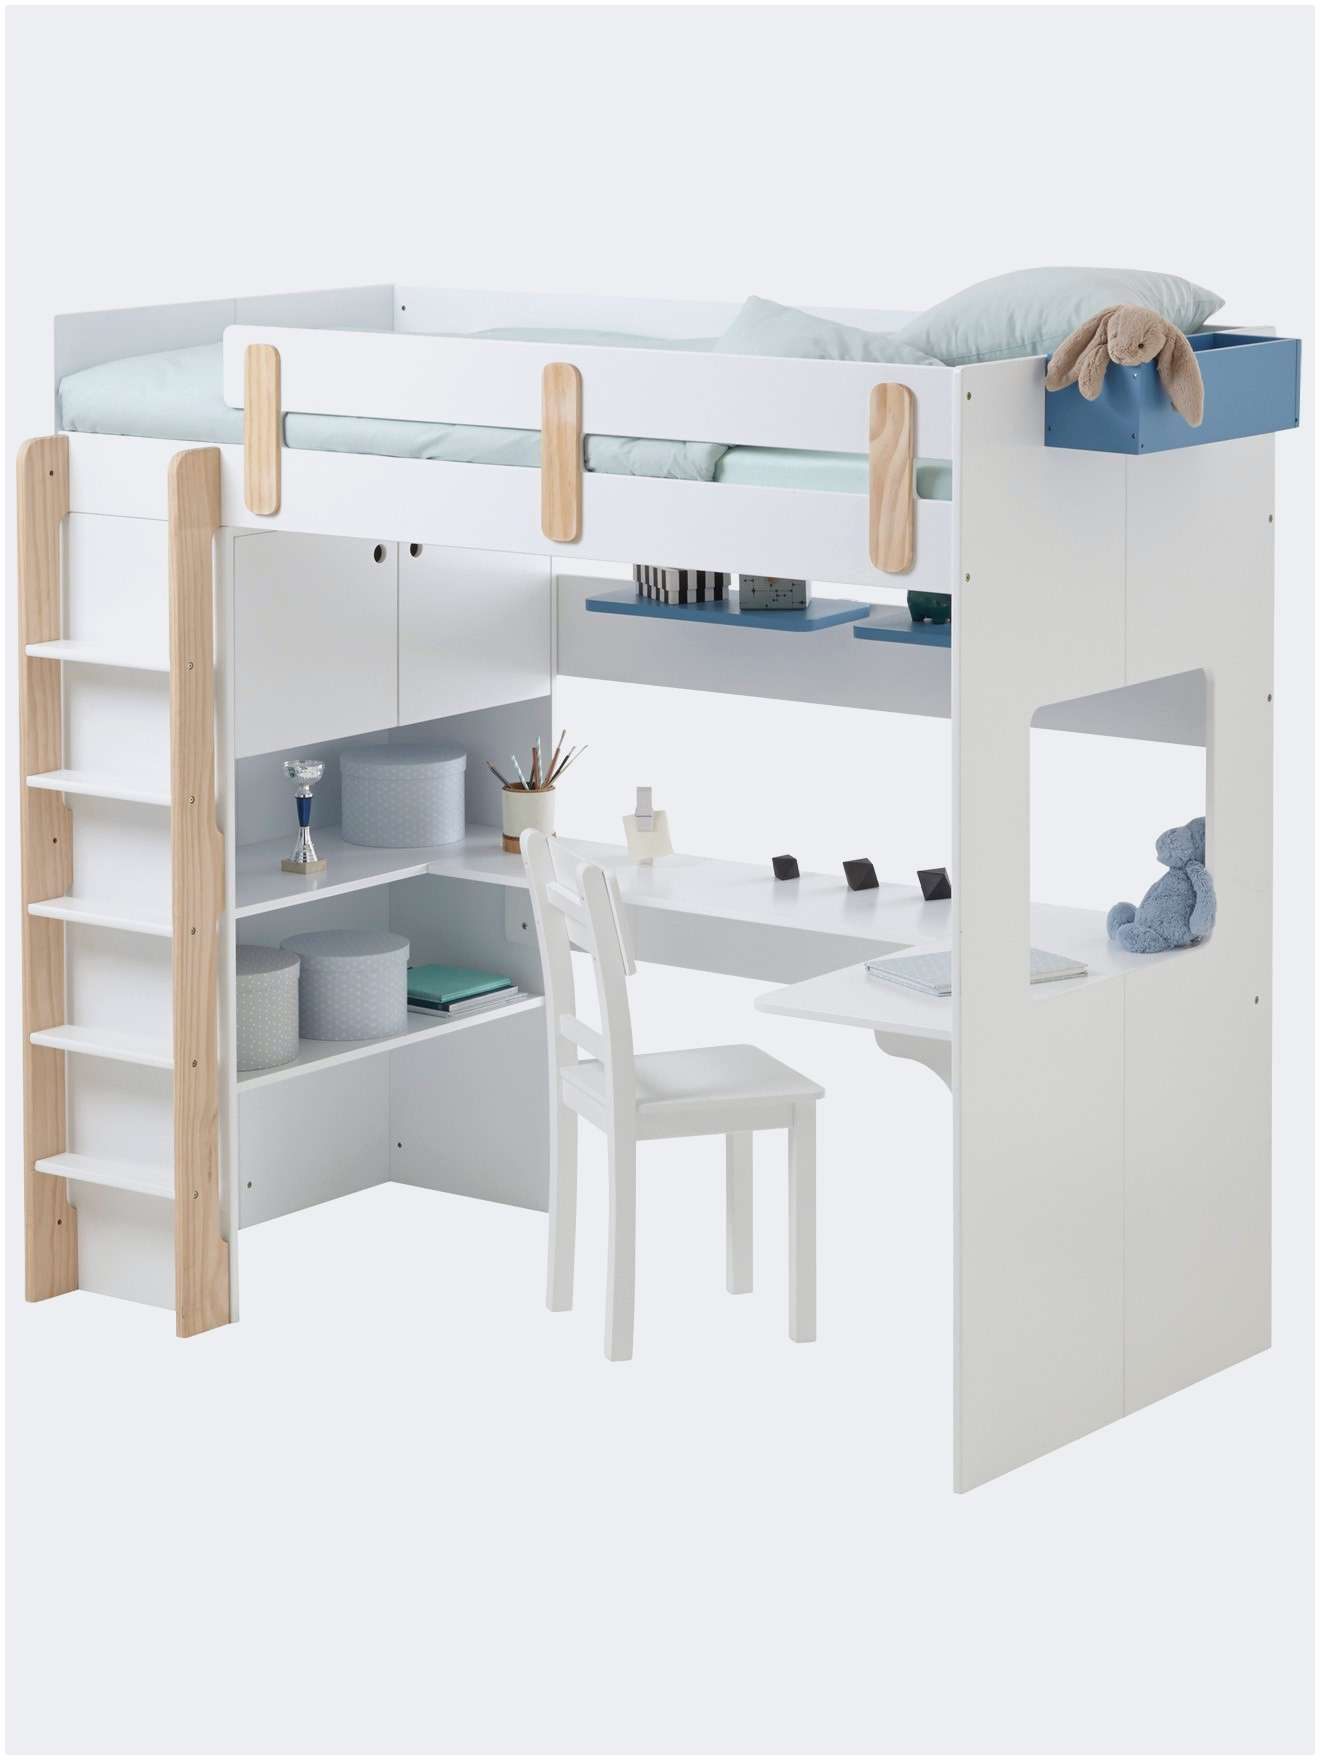 Lit Superposé Pour Adulte Inspiré Frais Lit Mezzanine Ikea 2 Places Pour Alternative Lit Superposé